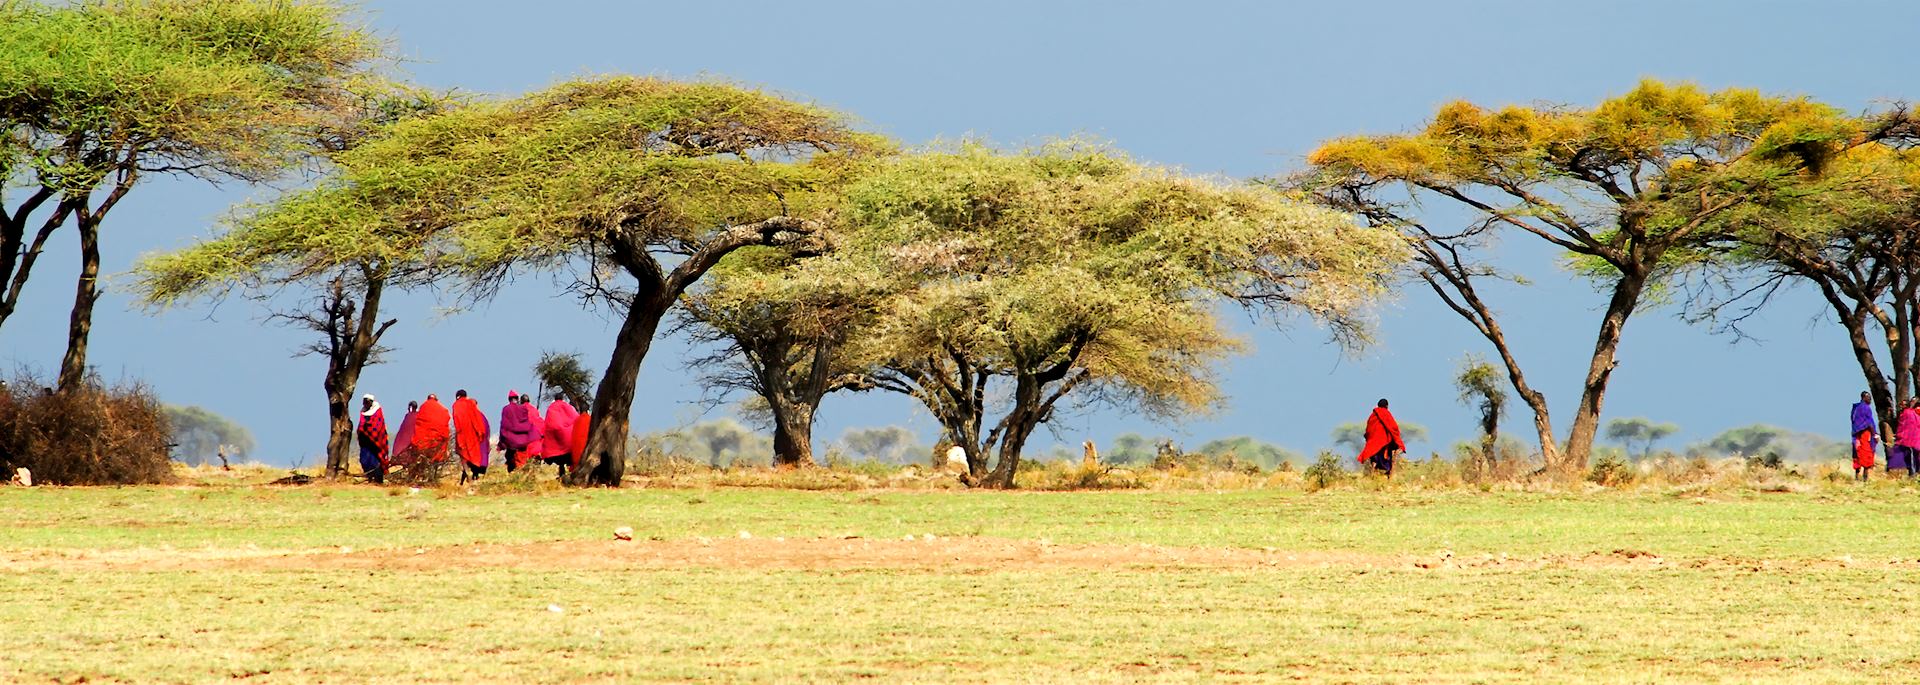 Massai in Tanzania